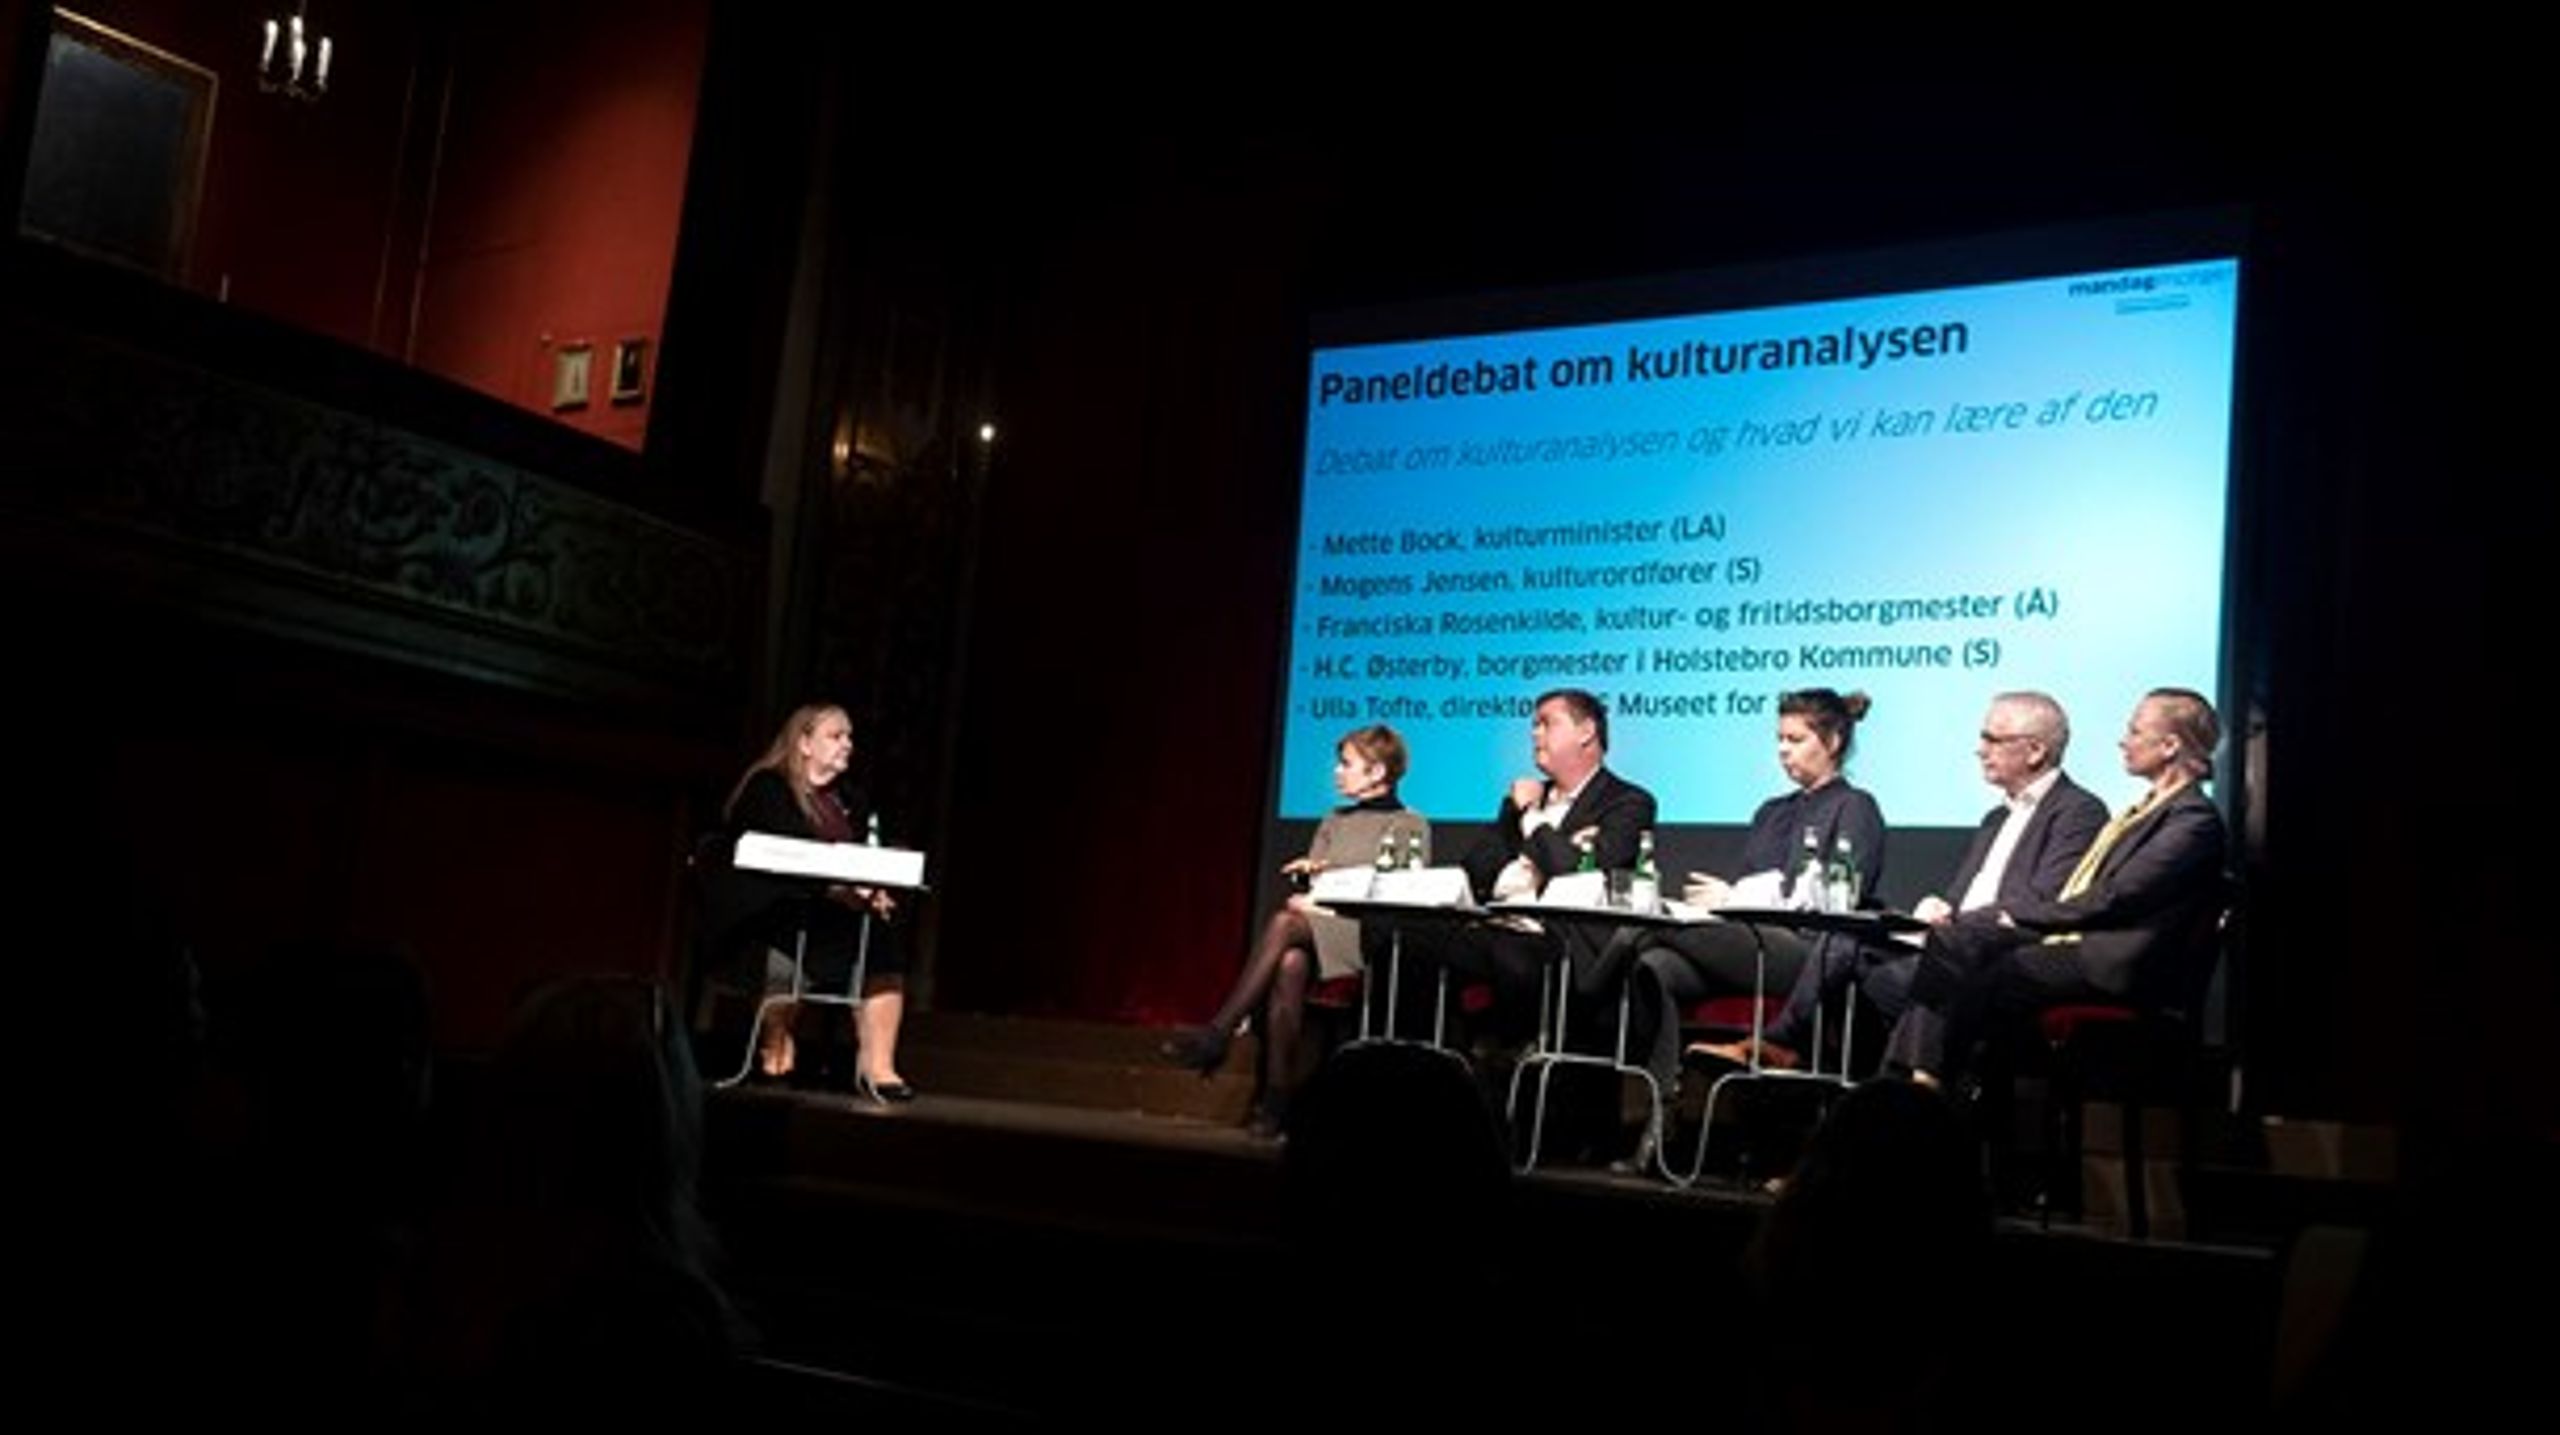 Til offentliggørelsen af kulturanalysen "Mellem ballet og biografer" 6. marts diskuterede blandt andre Mogens Jensen (S) og&nbsp;Mette Bock (LA) resultaterne med lokale kulturpolitikere.